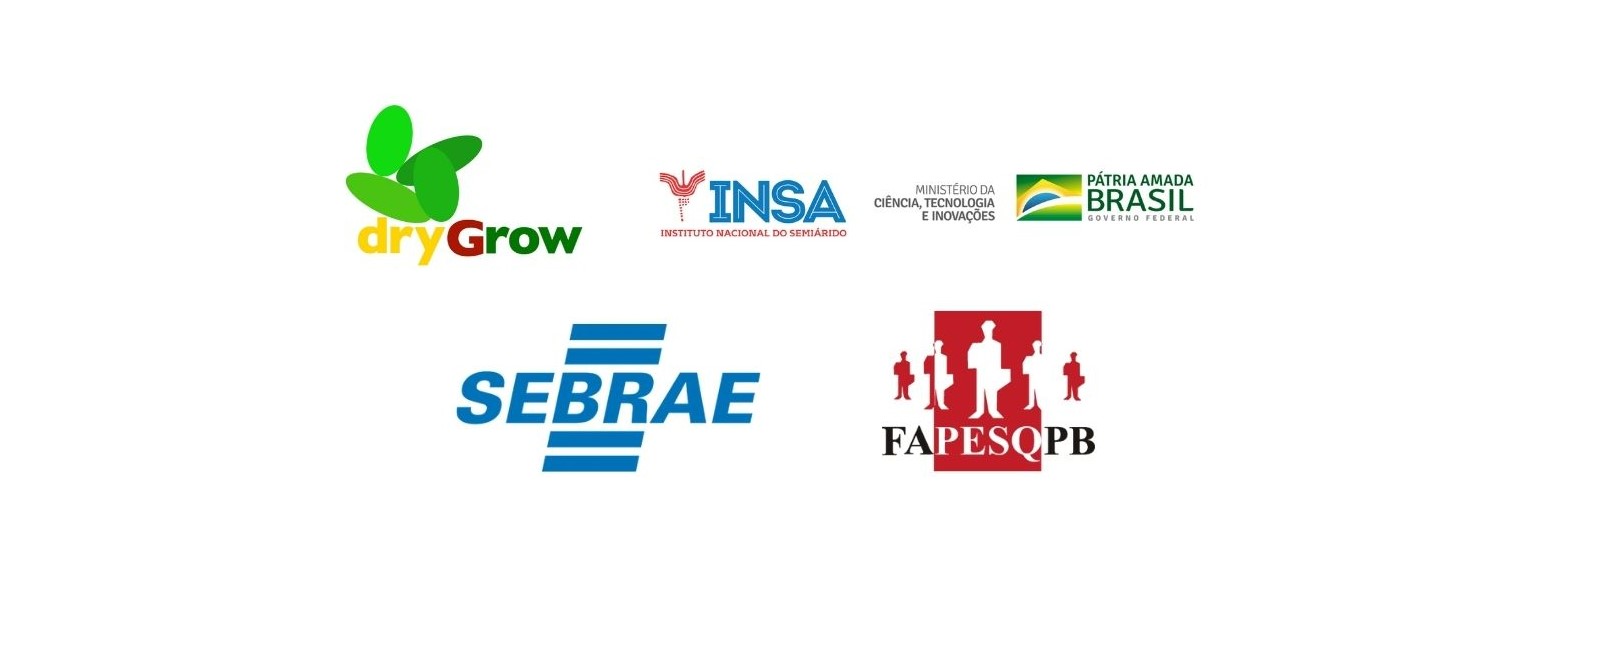 Imagem com logos de patrocinadores